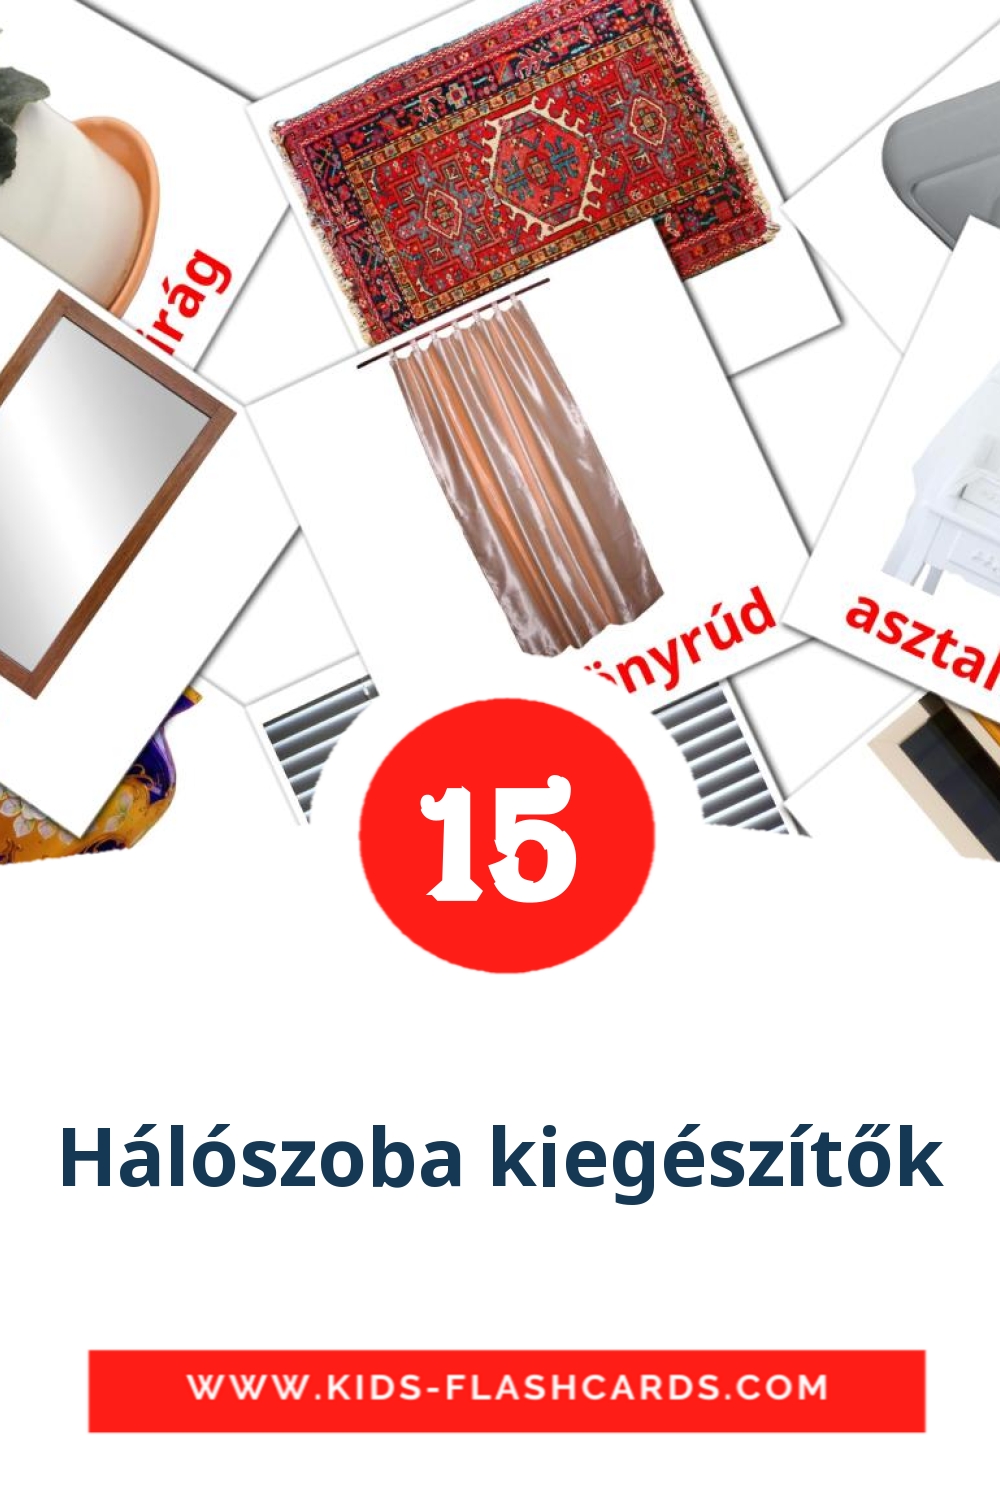 15 carte illustrate di Hálószoba kiegészítők per la scuola materna in ungherese